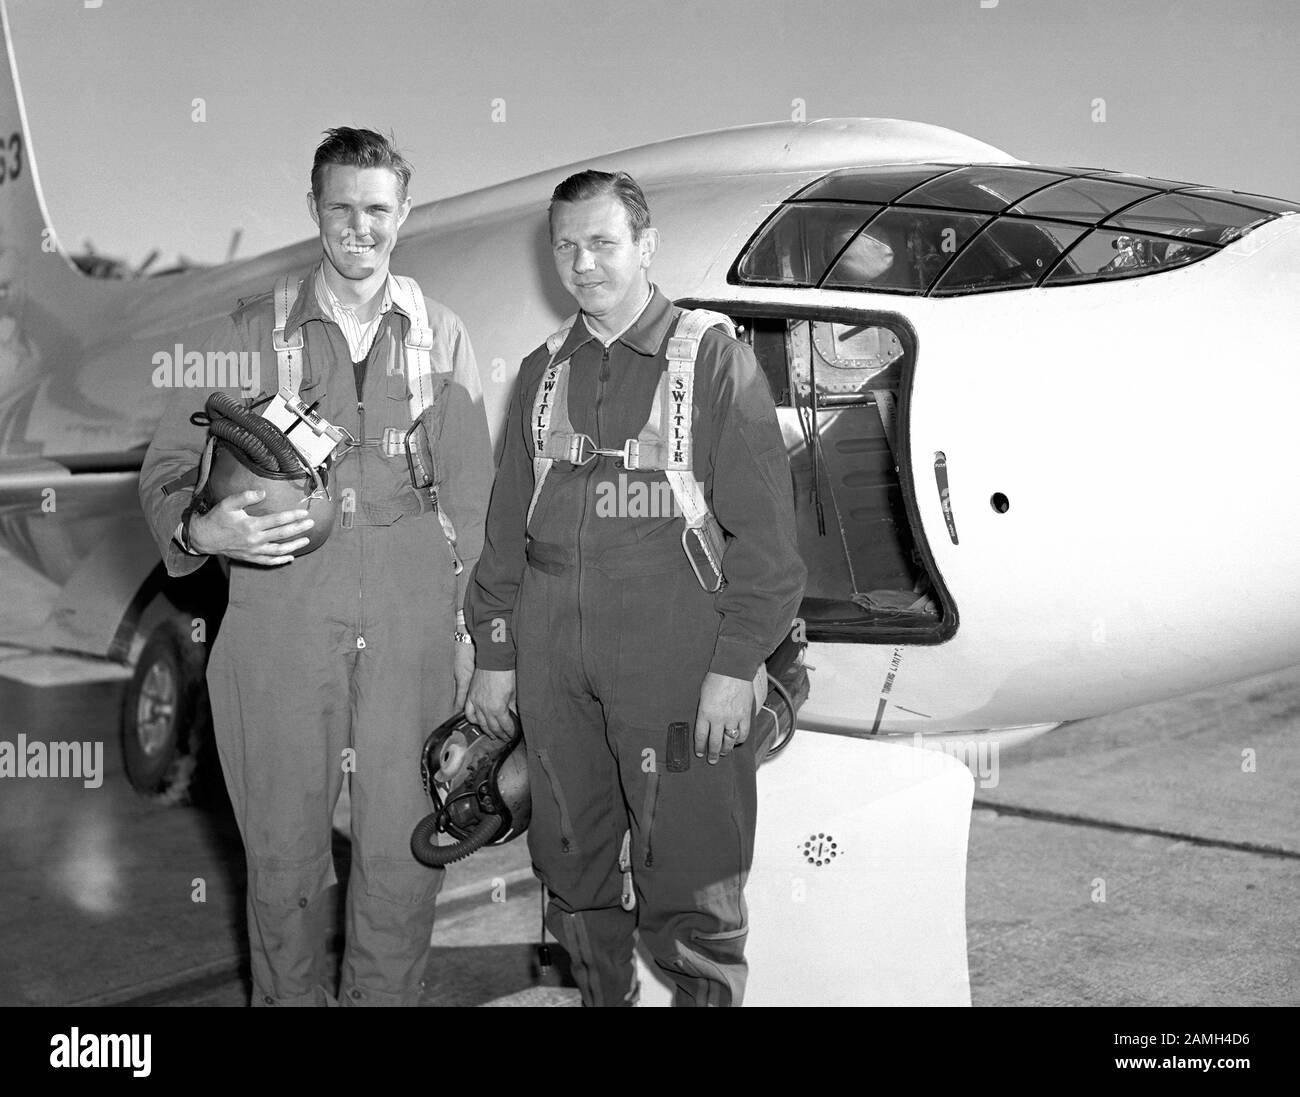 Photo des pilotes du NACA Robert Champine et Herbert Hoover se tenant à côté du Bell X 1, un avion propulsé par un moteur de fusée, septembre 1949. Image de courtoisie NASA. () Banque D'Images